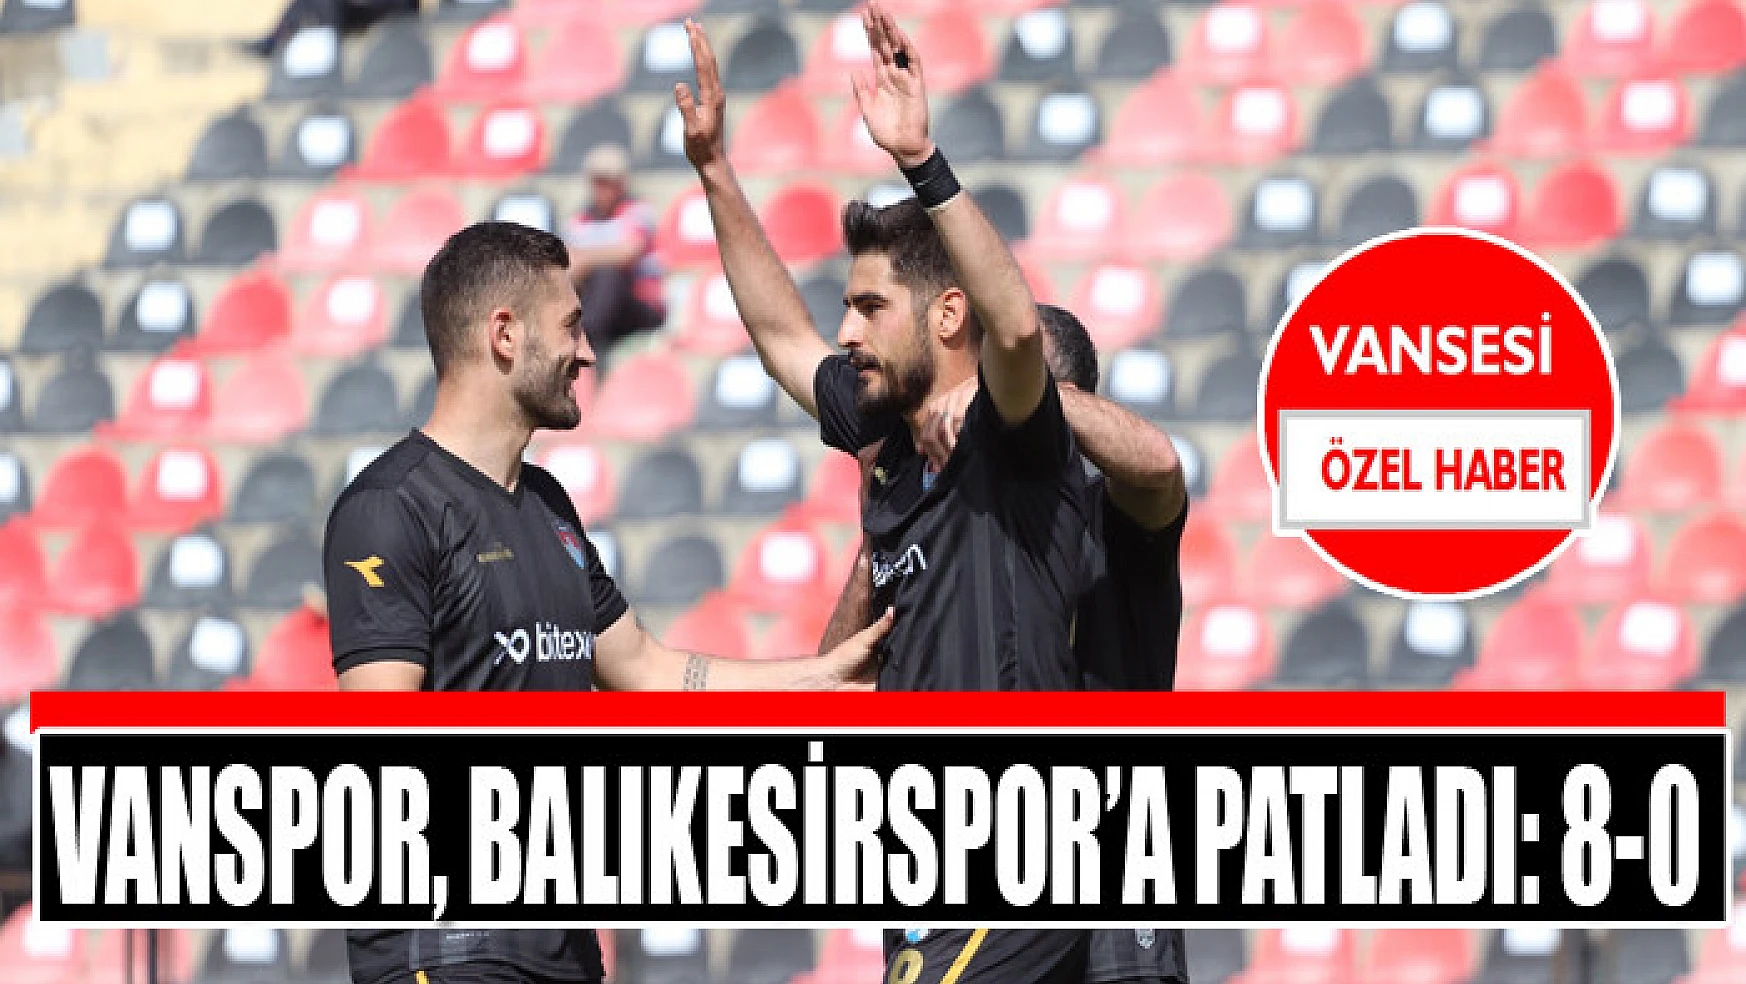 Vanspor, Balıkesirspor'a patladı: 8-0